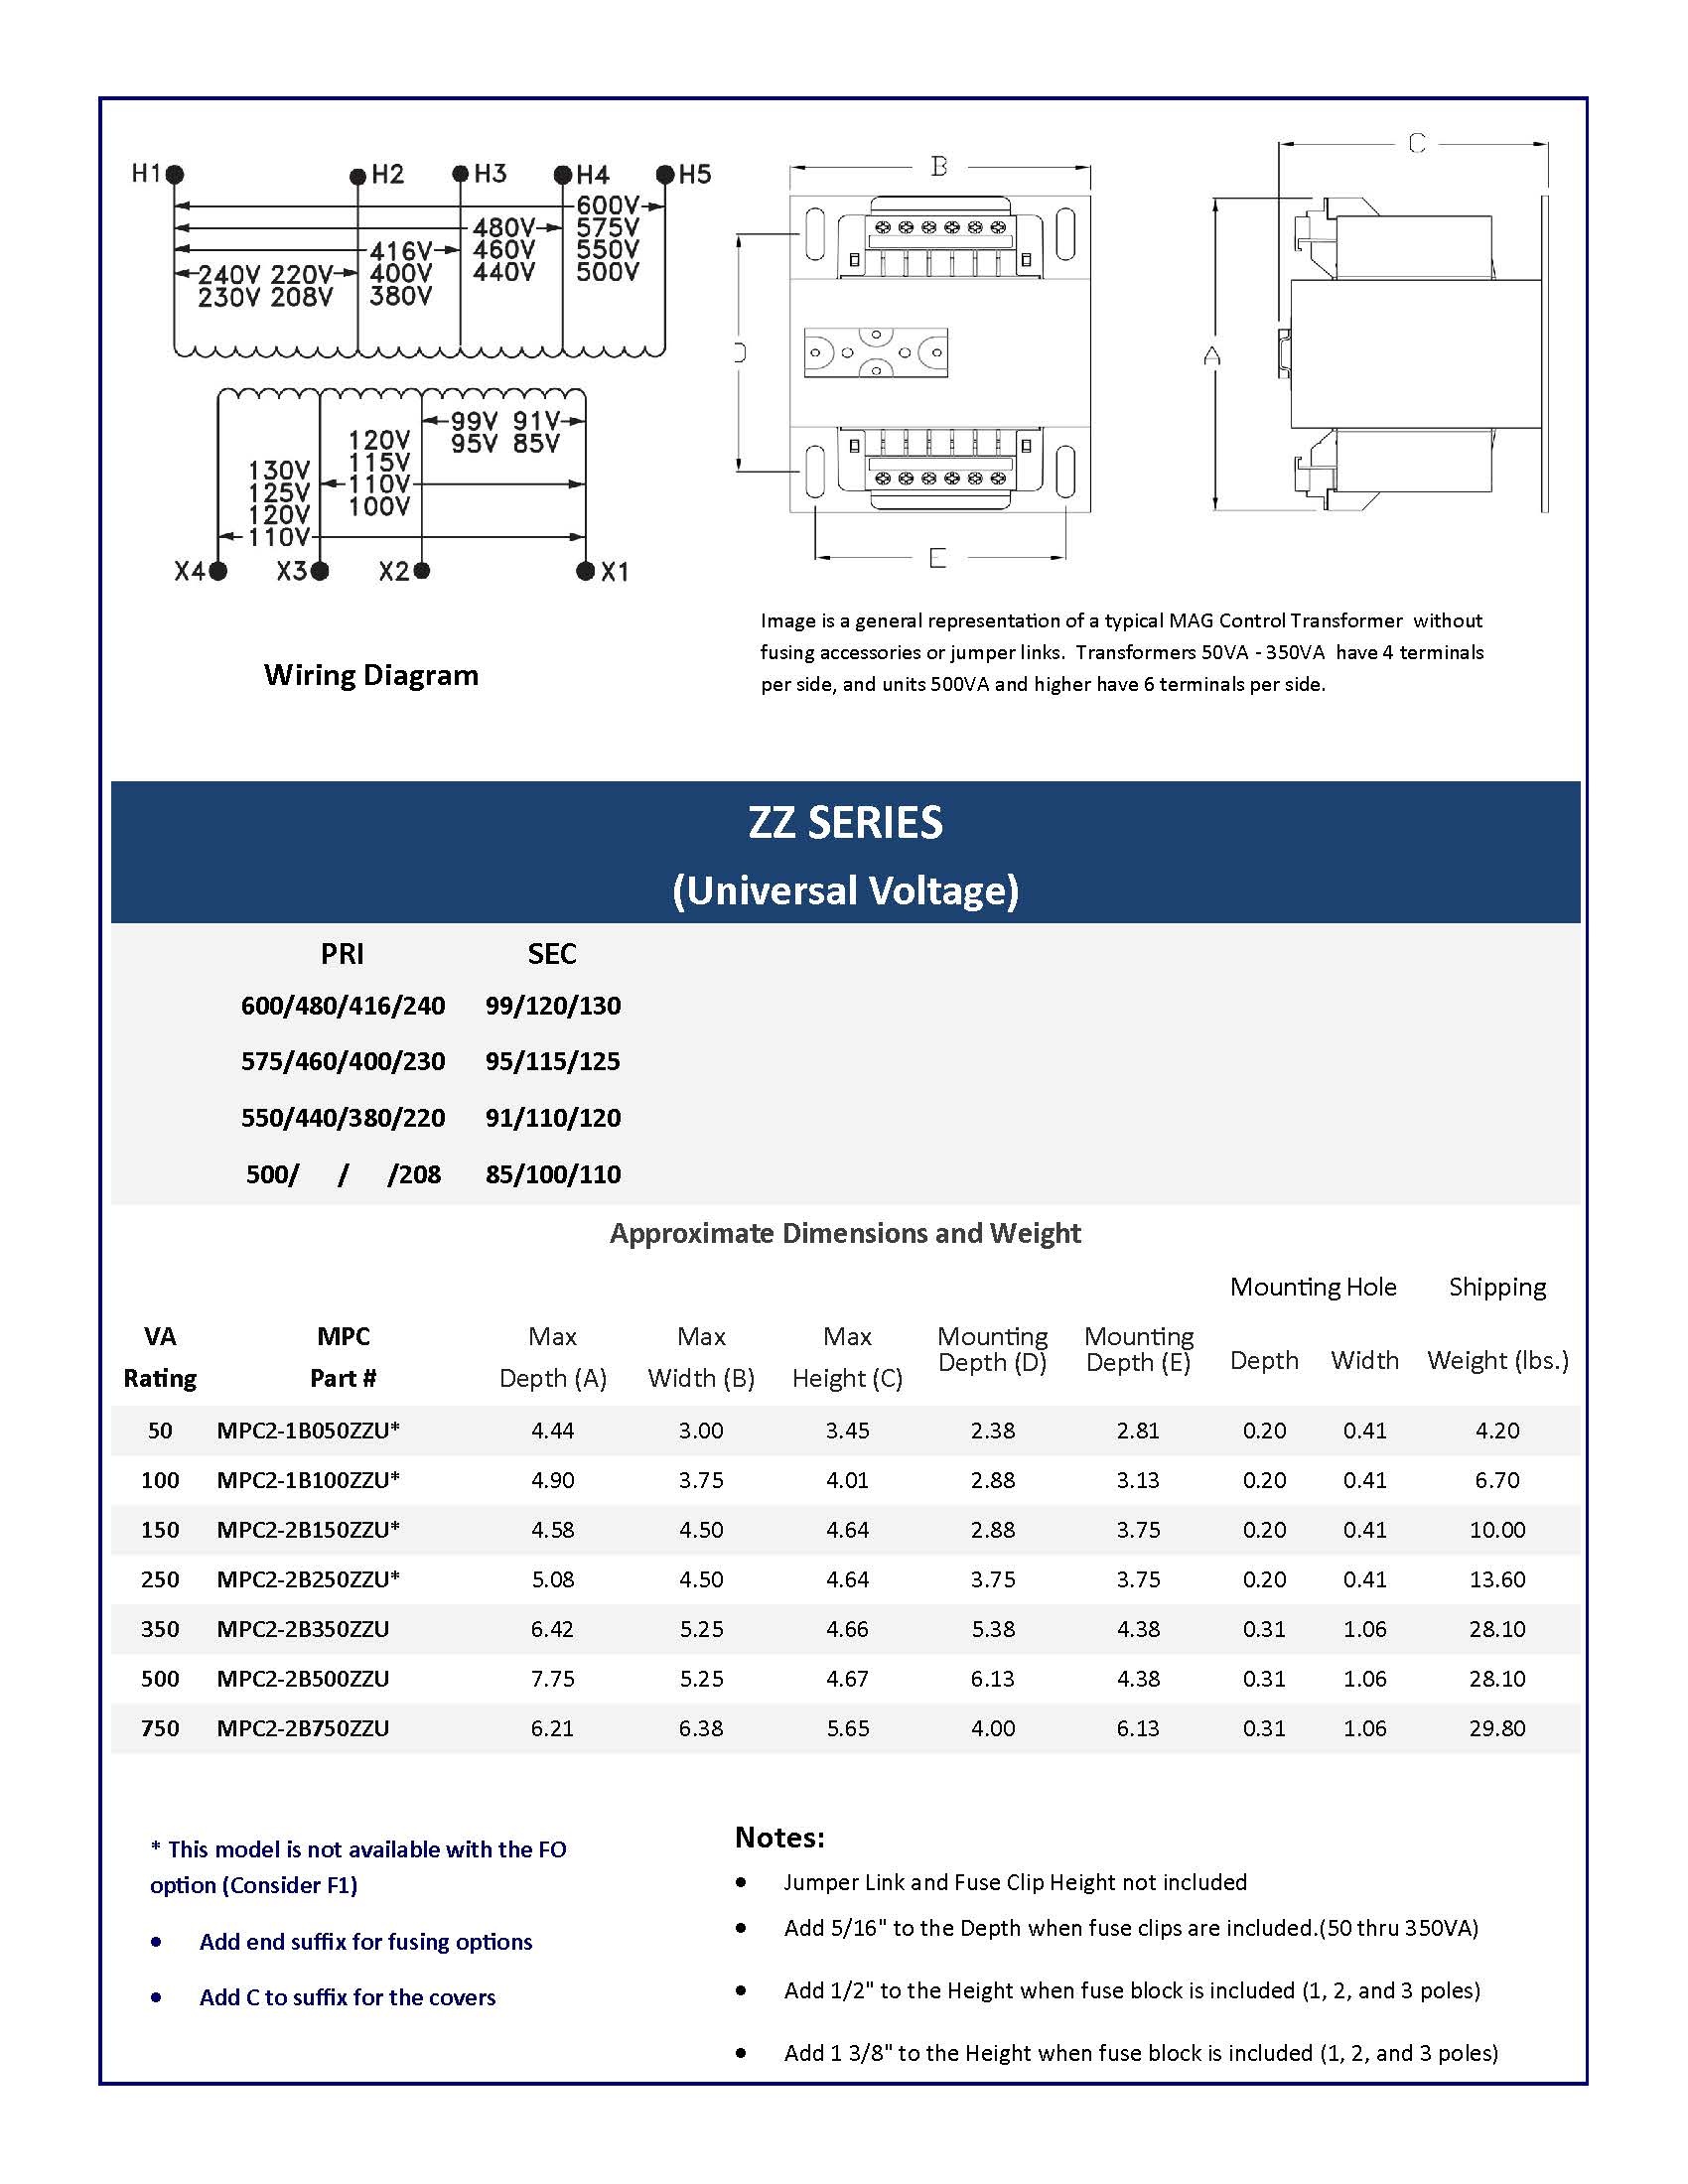 ZZ Series Data Sheet